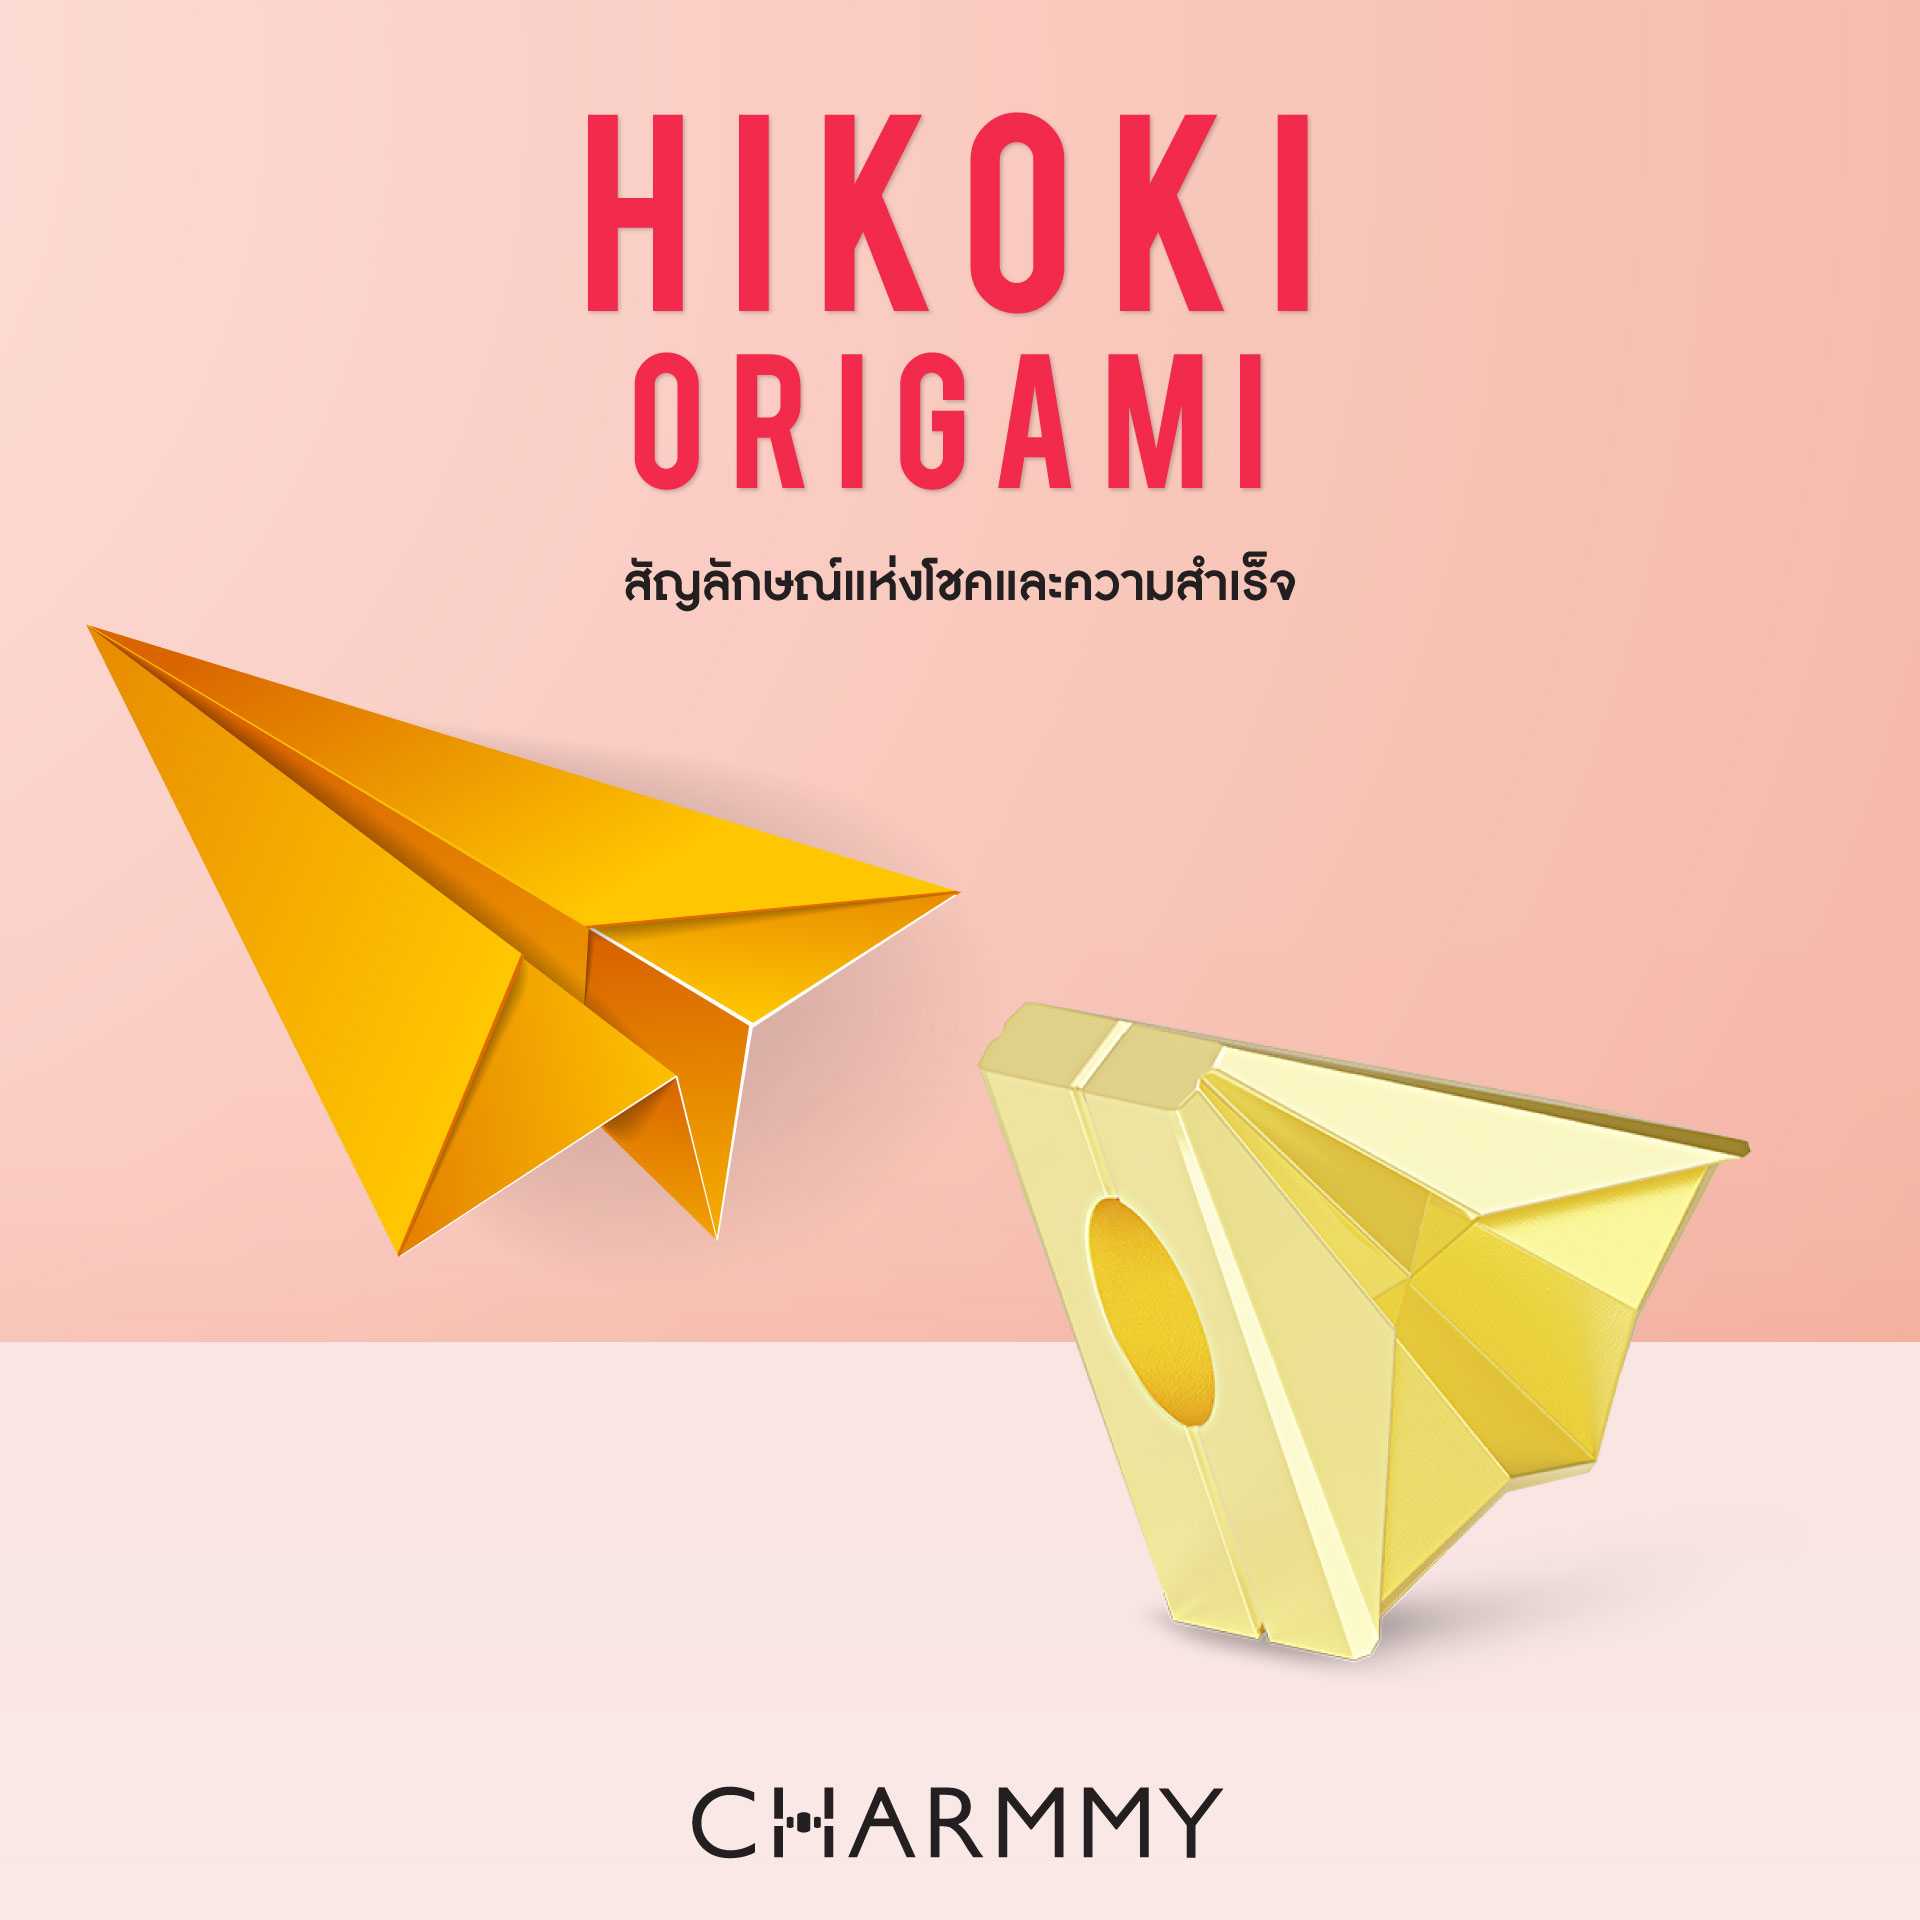 Cuties Hikoki Origami